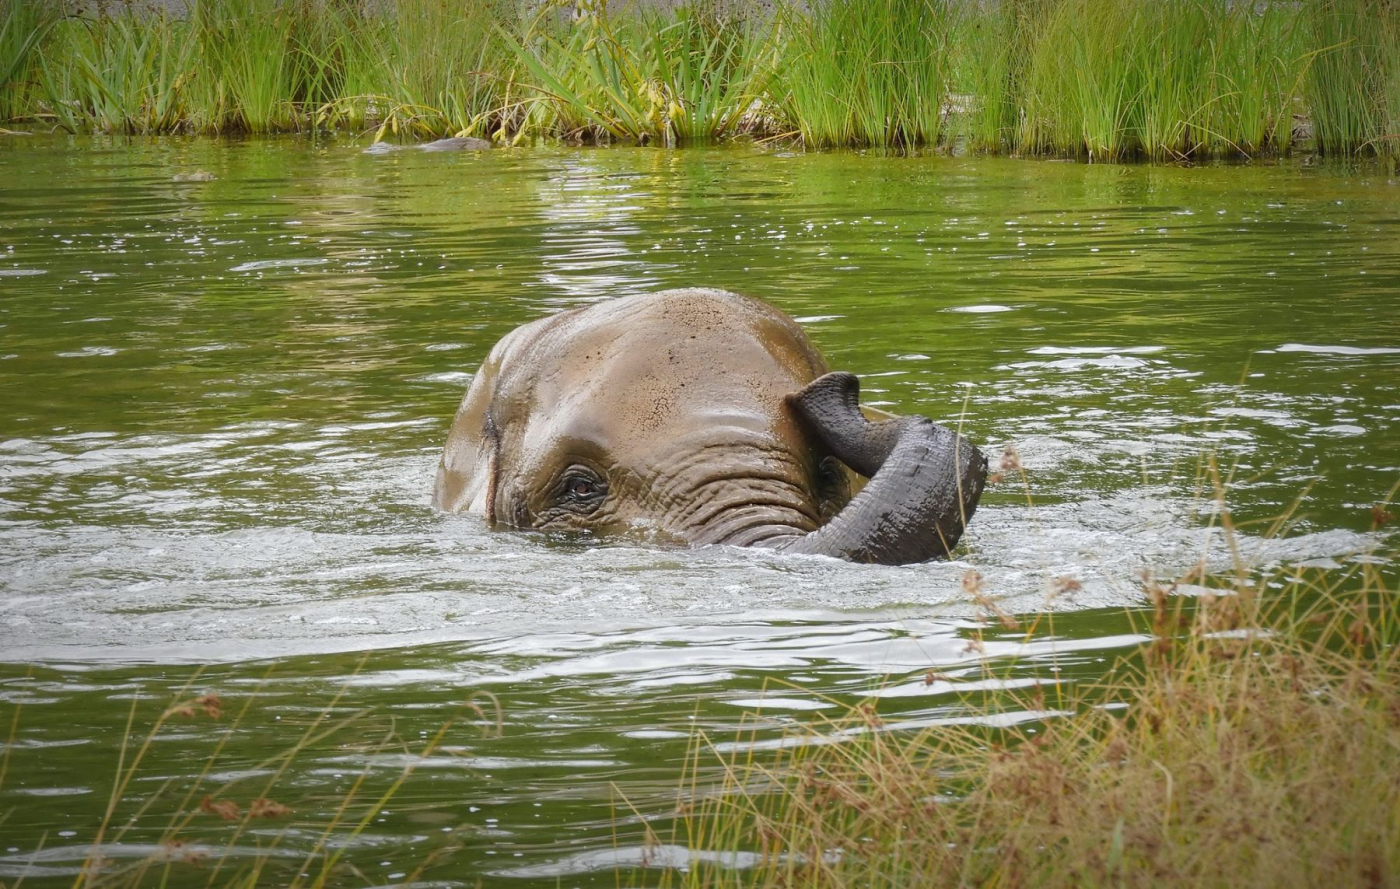 Jen u nás uvidíte plavat slony